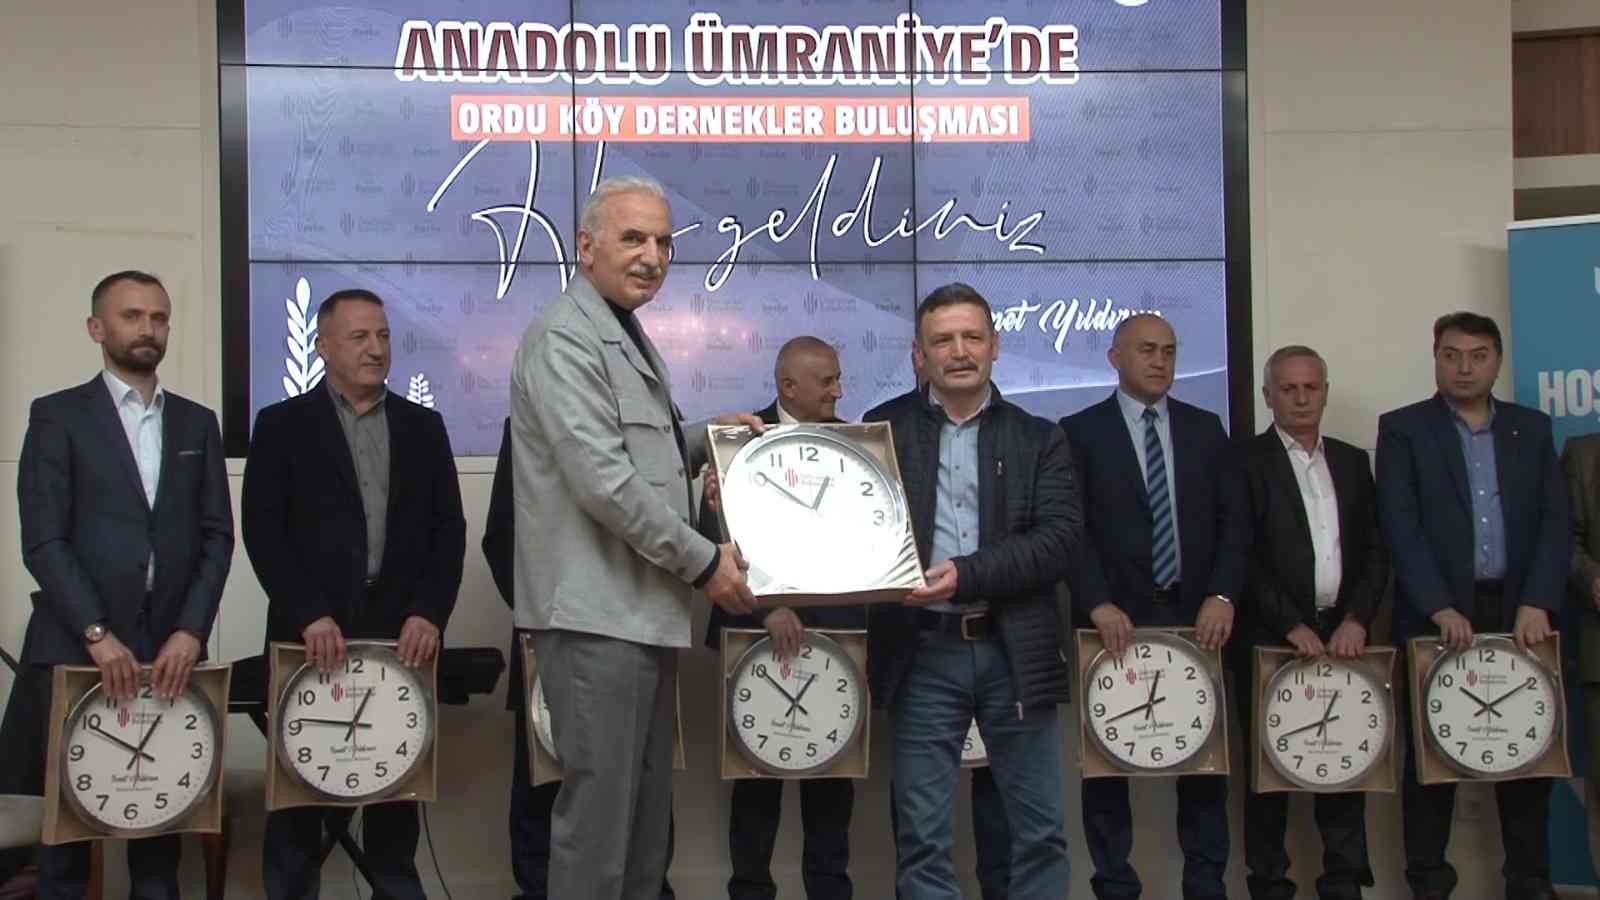 Ümraniye Belediyesi, “Anadolu Ümraniye’de” sloganıyla düzenlenen etkinlikle Ordulu vatandaşların memleket hasretine son verdi. Ümraniye ...